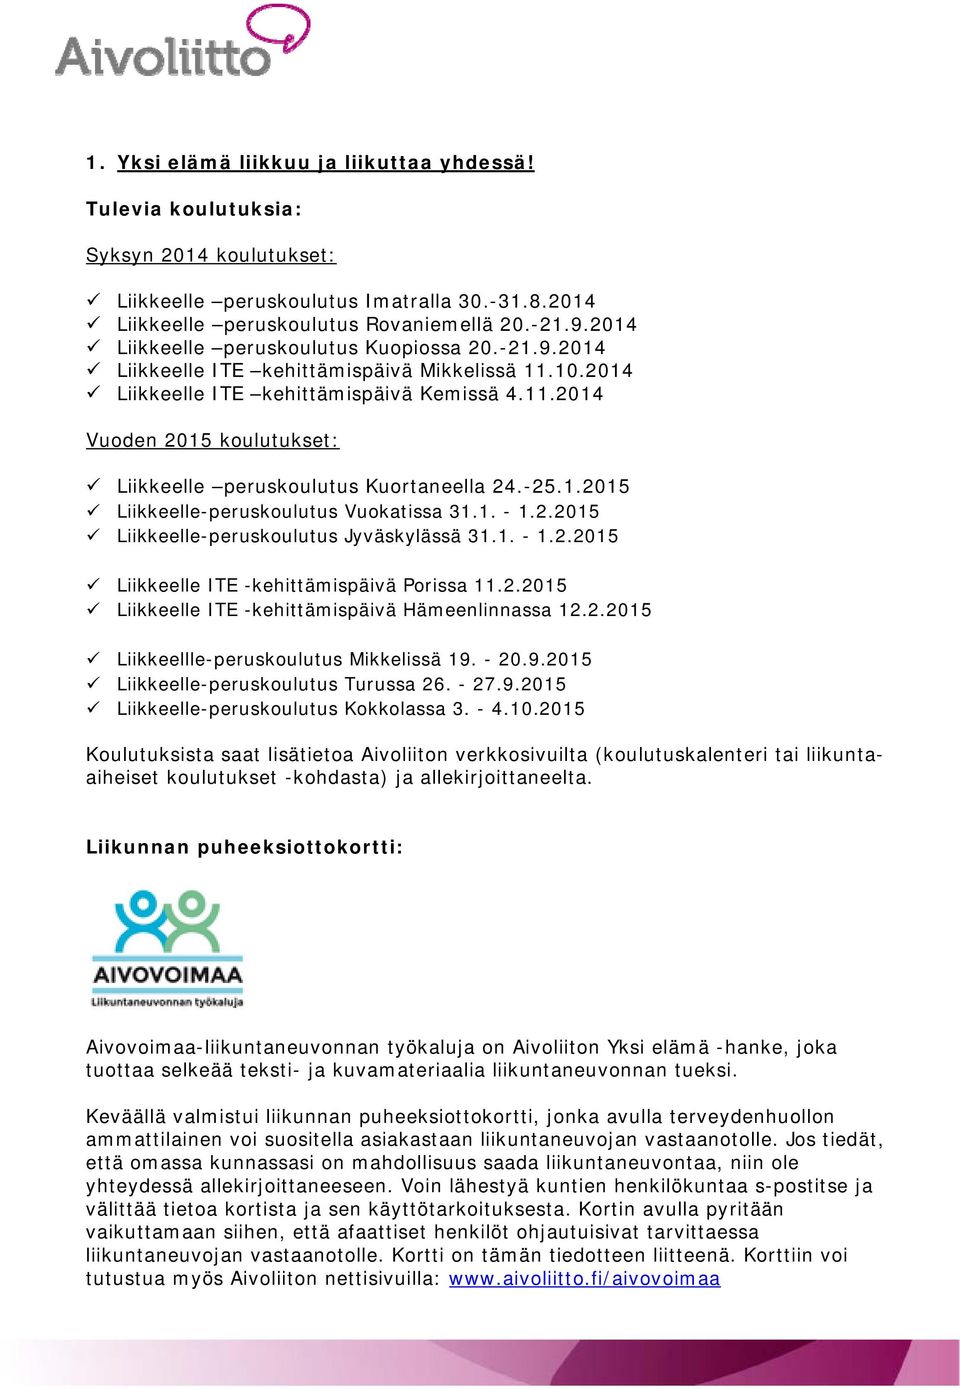 -25.1.2015 Liikkeelle-peruskoulutus Vuokatissa 31.1. - 1.2.2015 Liikkeelle-peruskoulutus Jyväskylässä 31.1. - 1.2.2015 Liikkeelle ITE -kehittämispäivä Porissa 11.2.2015 Liikkeelle ITE -kehittämispäivä Hämeenlinnassa 12.